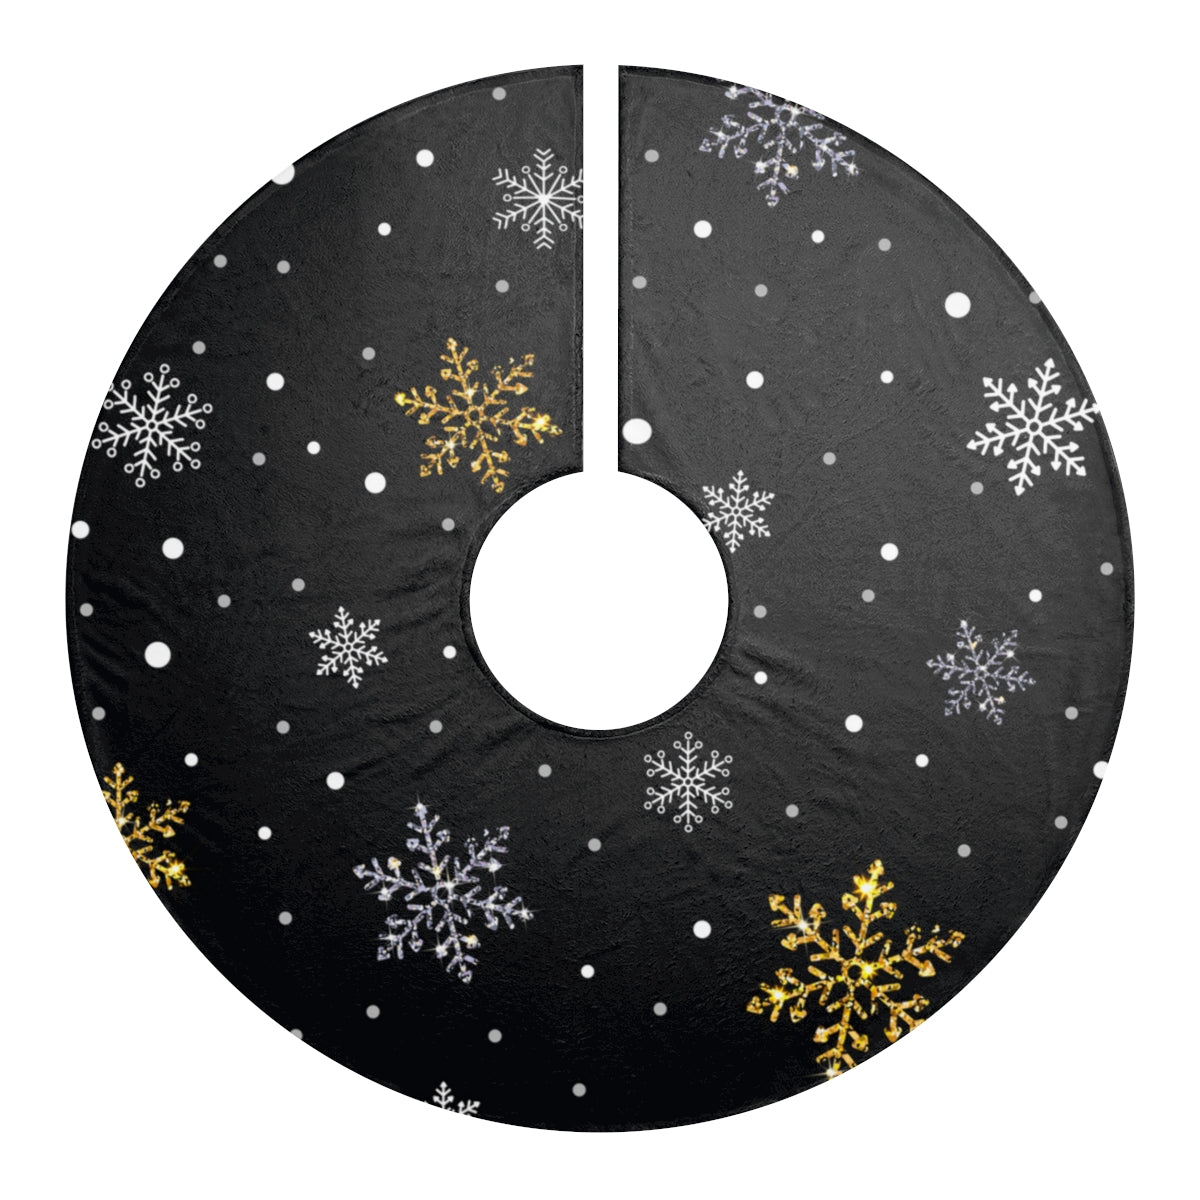 Snowflake Tree Skirt / Christmas Tree Skirts /  Silver and Gold Christmas Decor